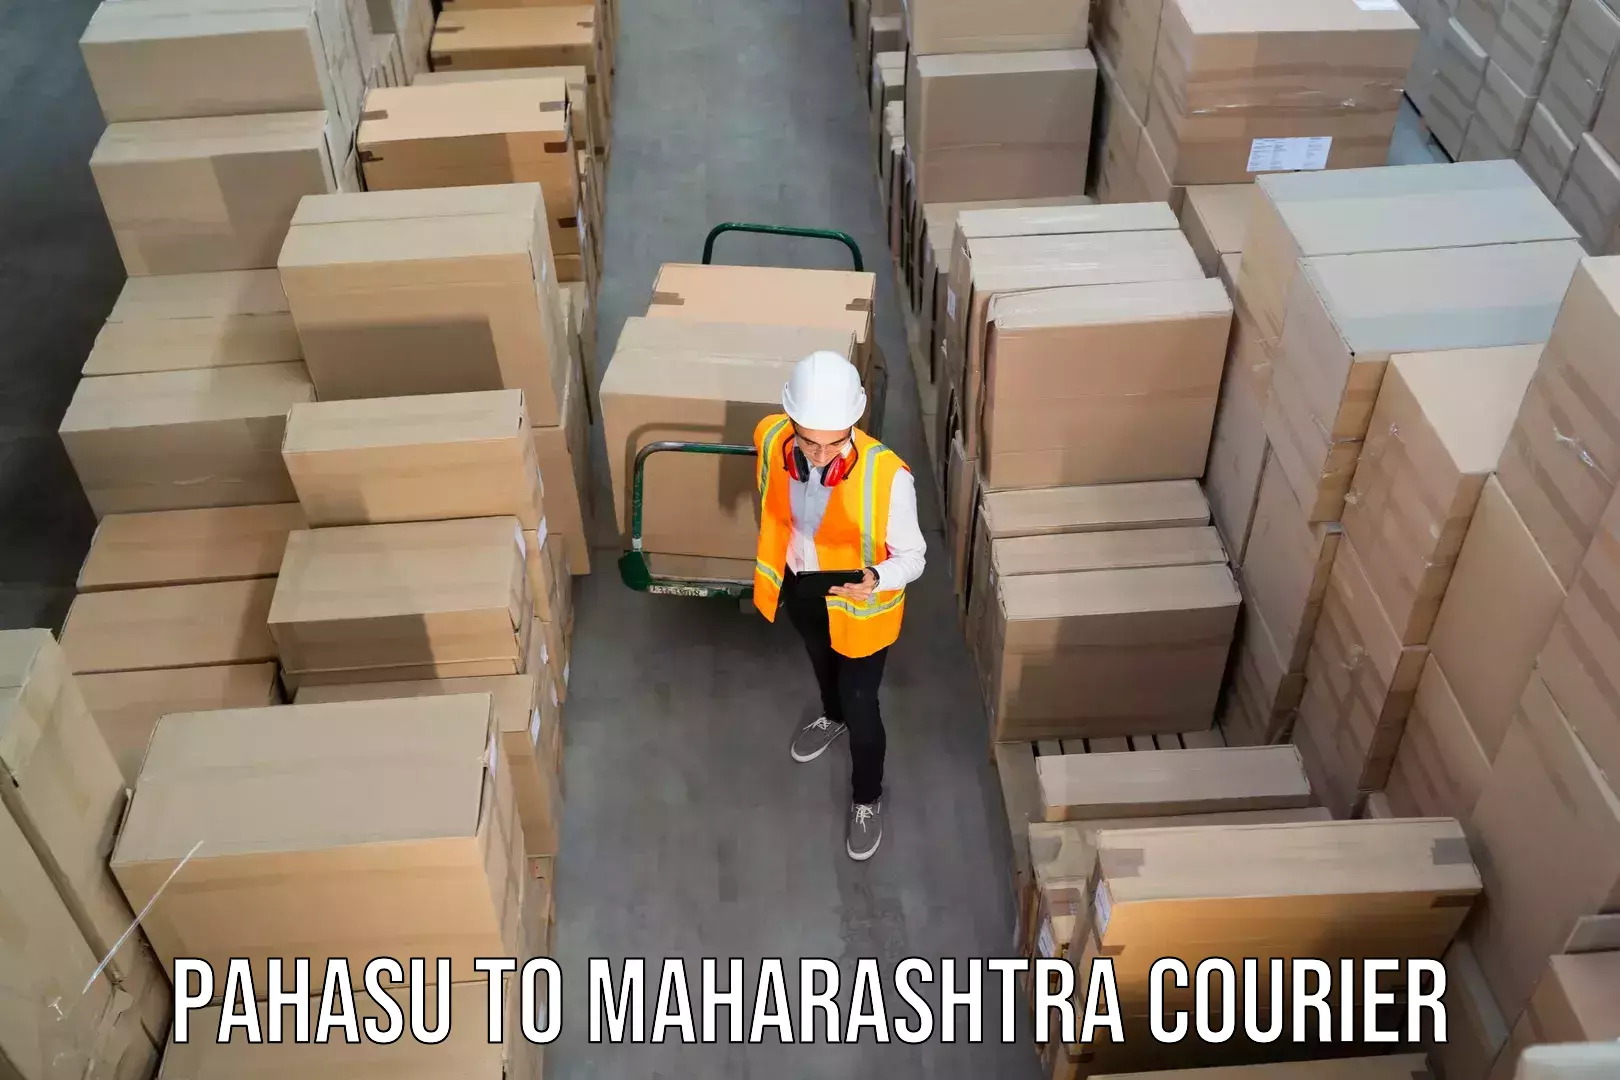 Holiday shipping services Pahasu to Maharashtra